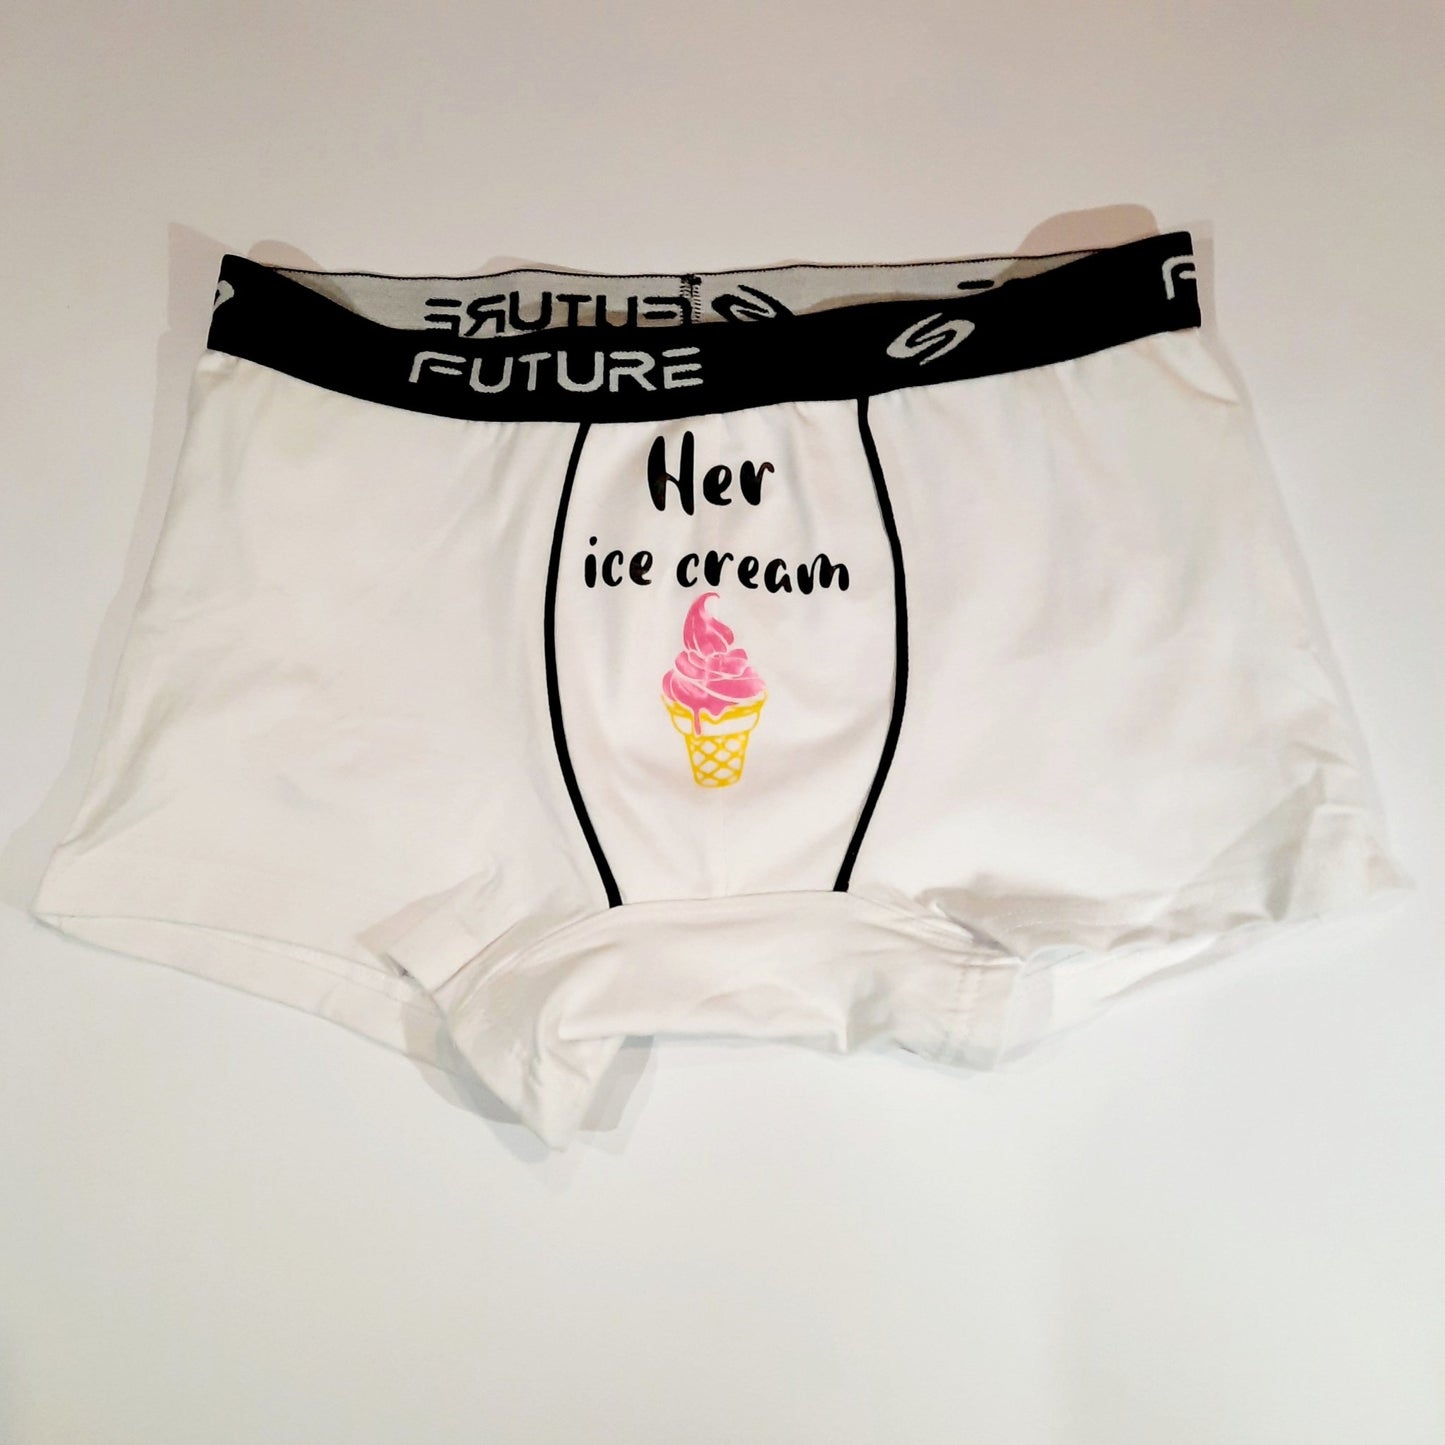 Men underwear - Her IceCream - Etba3lly